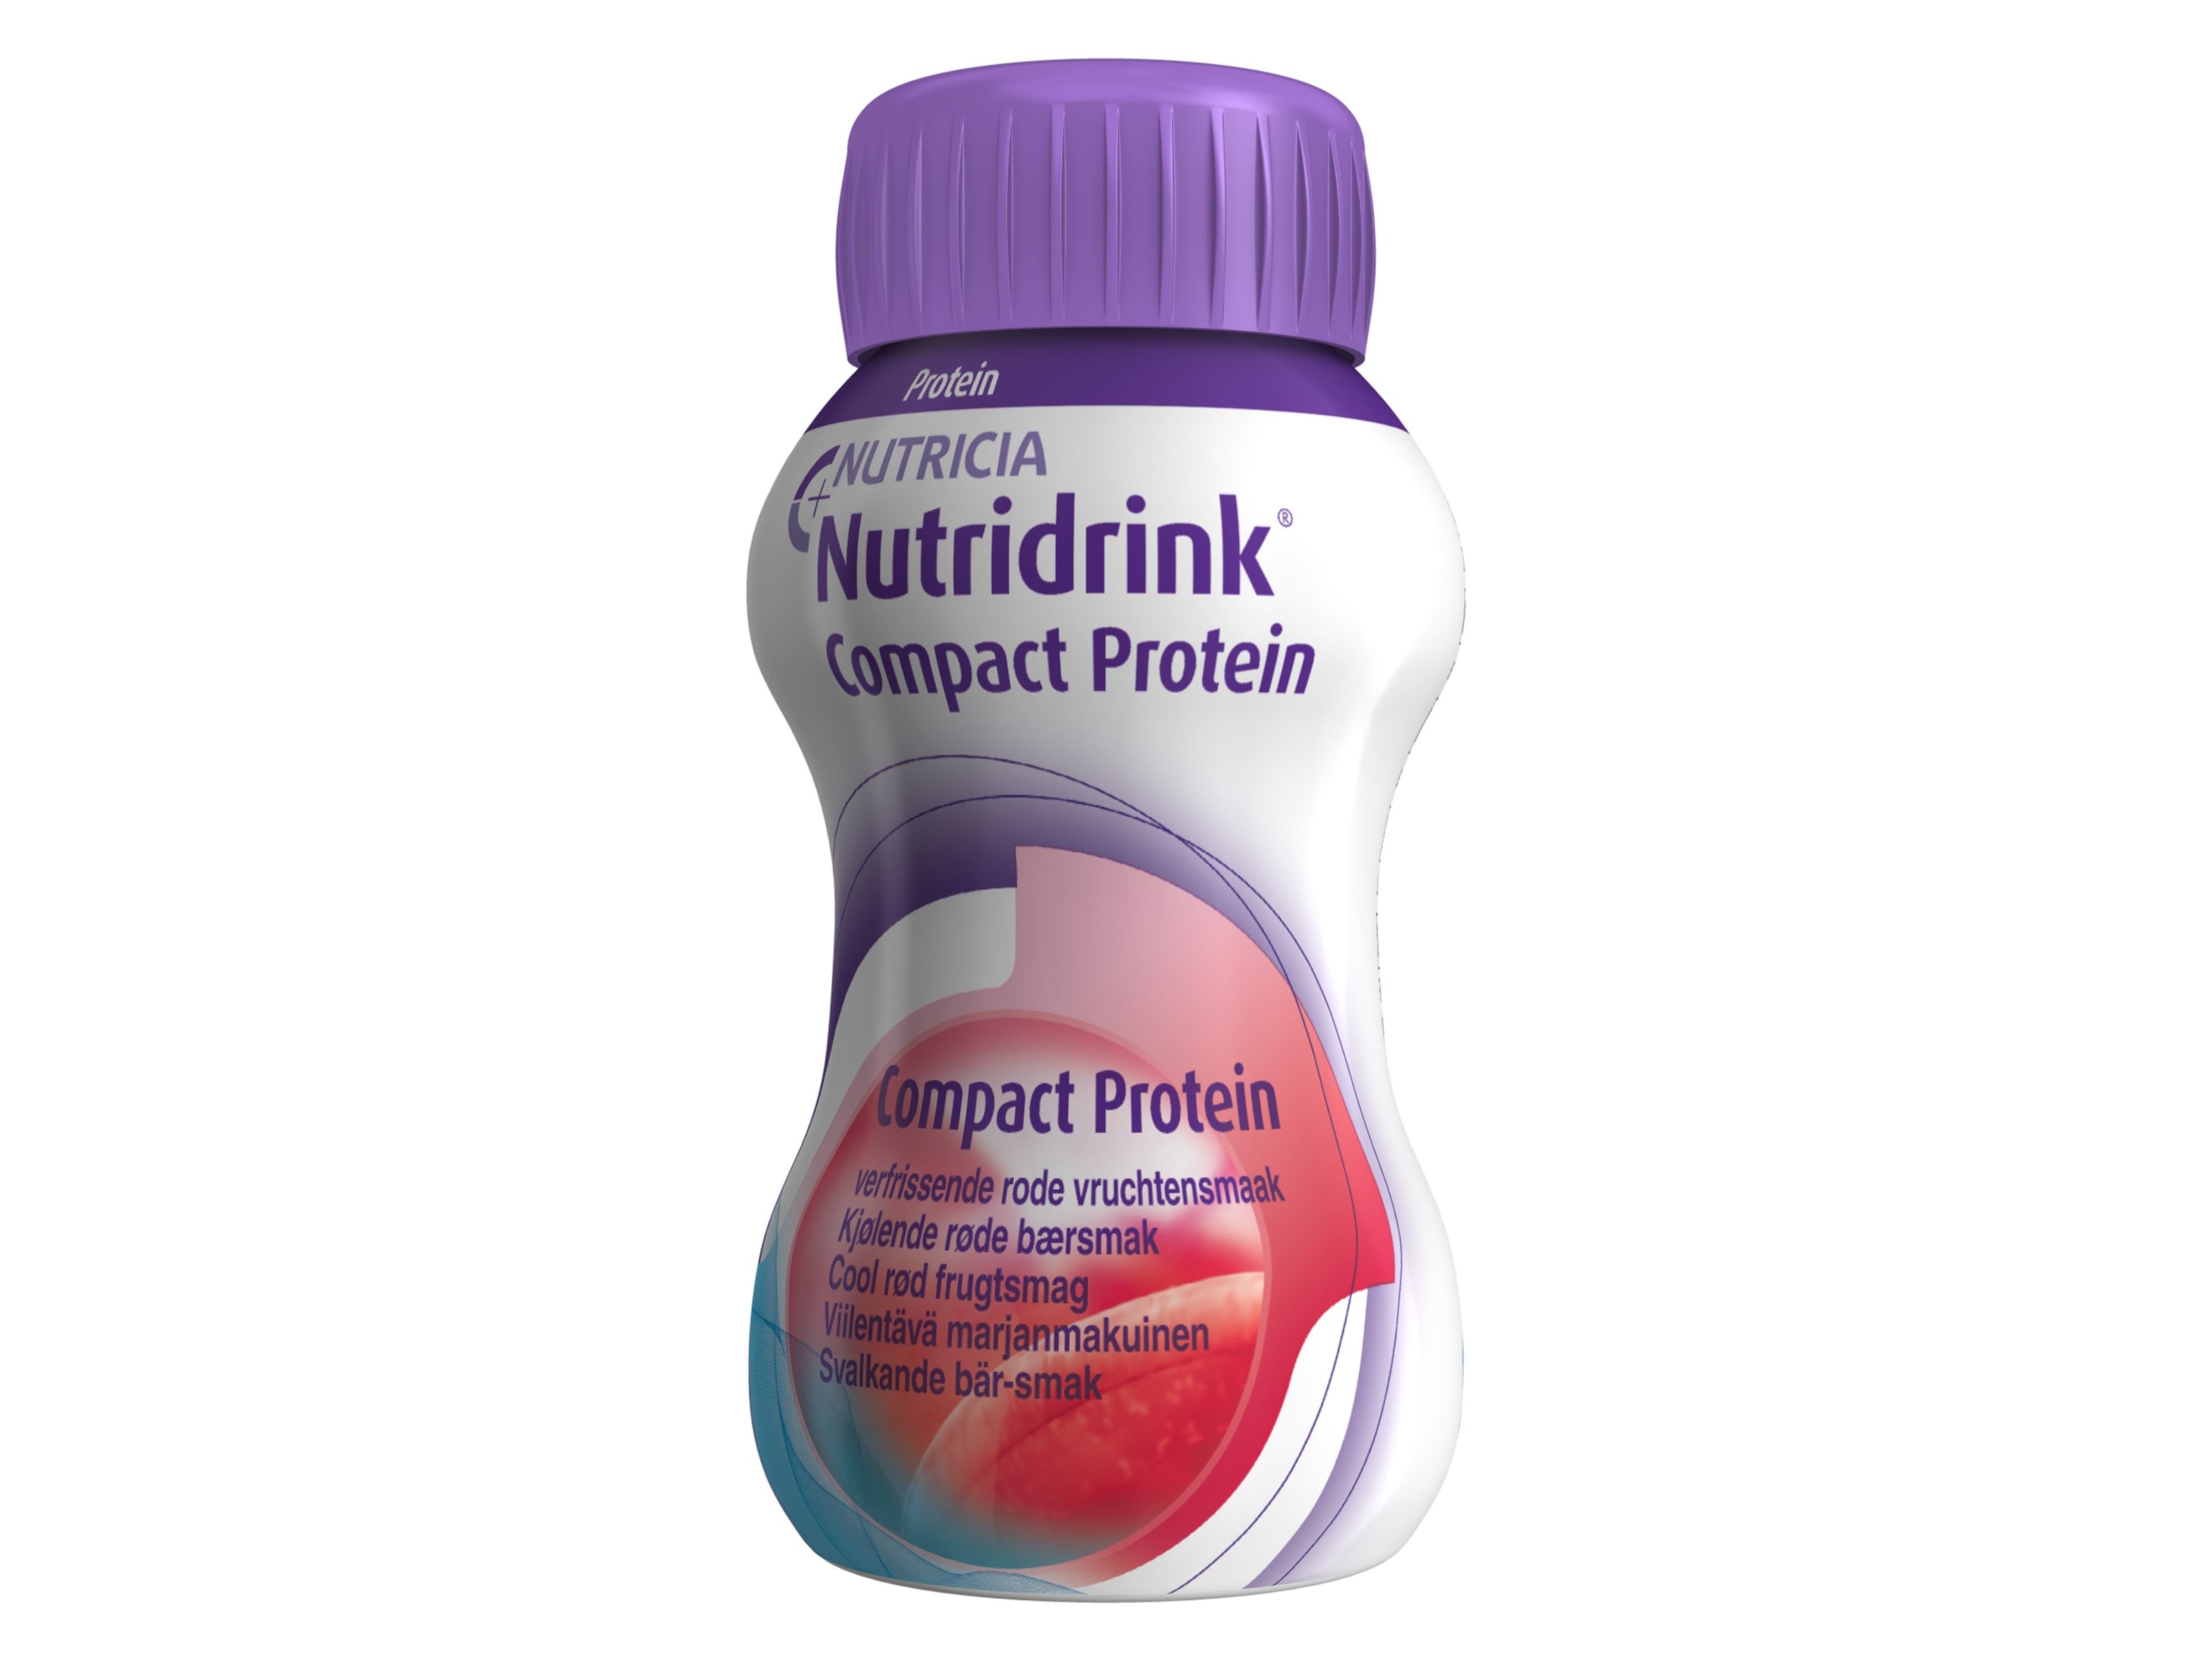 Nutridrink Compact proteinrik næringsdrikk, Kjølende røde bær, 4 x 125 ml